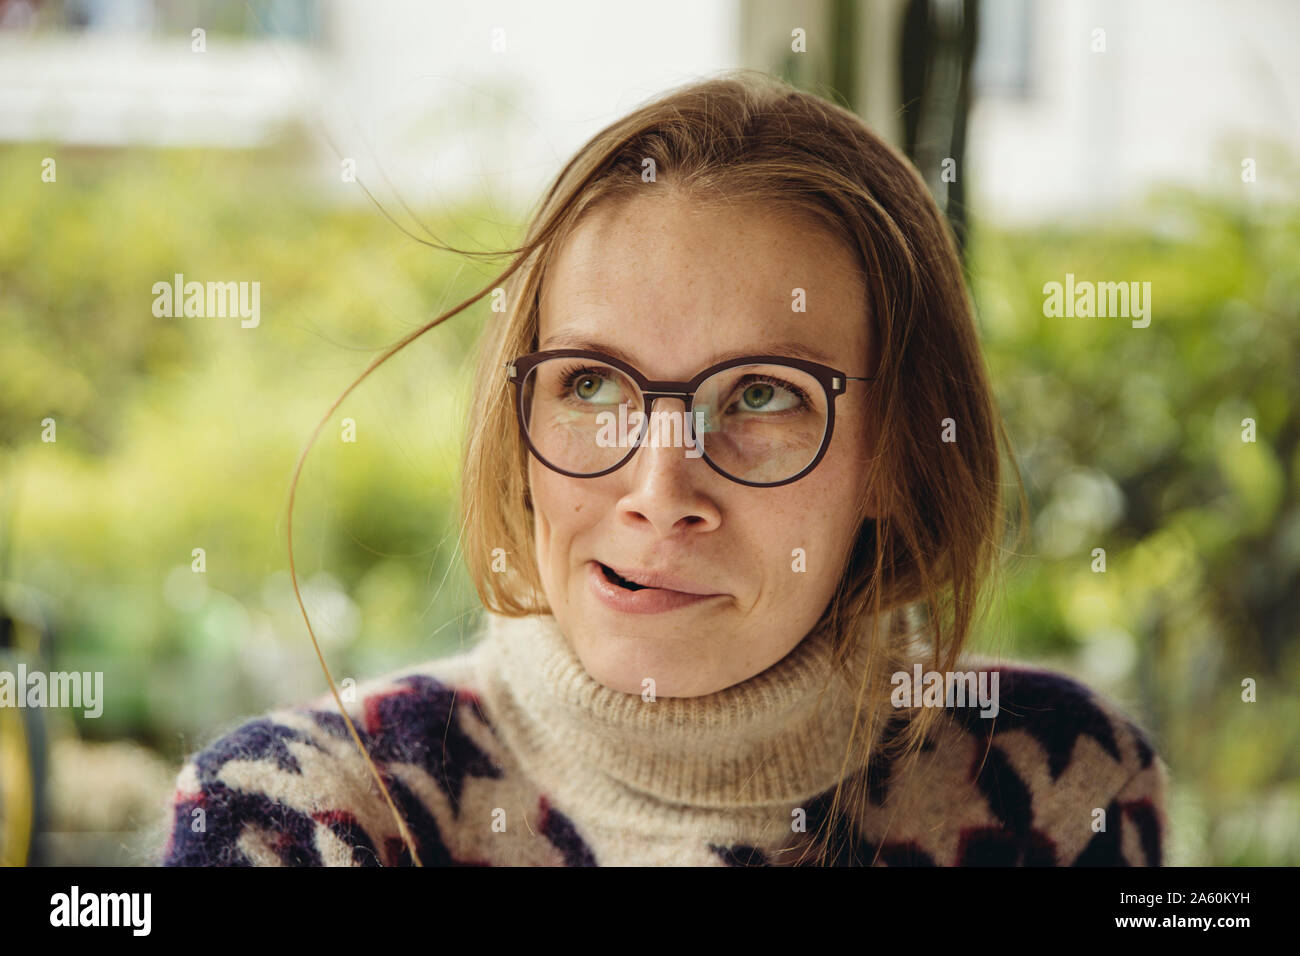 Retrato de mujer joven con gafas volaron un suéter esponjoso cabello Foto de stock